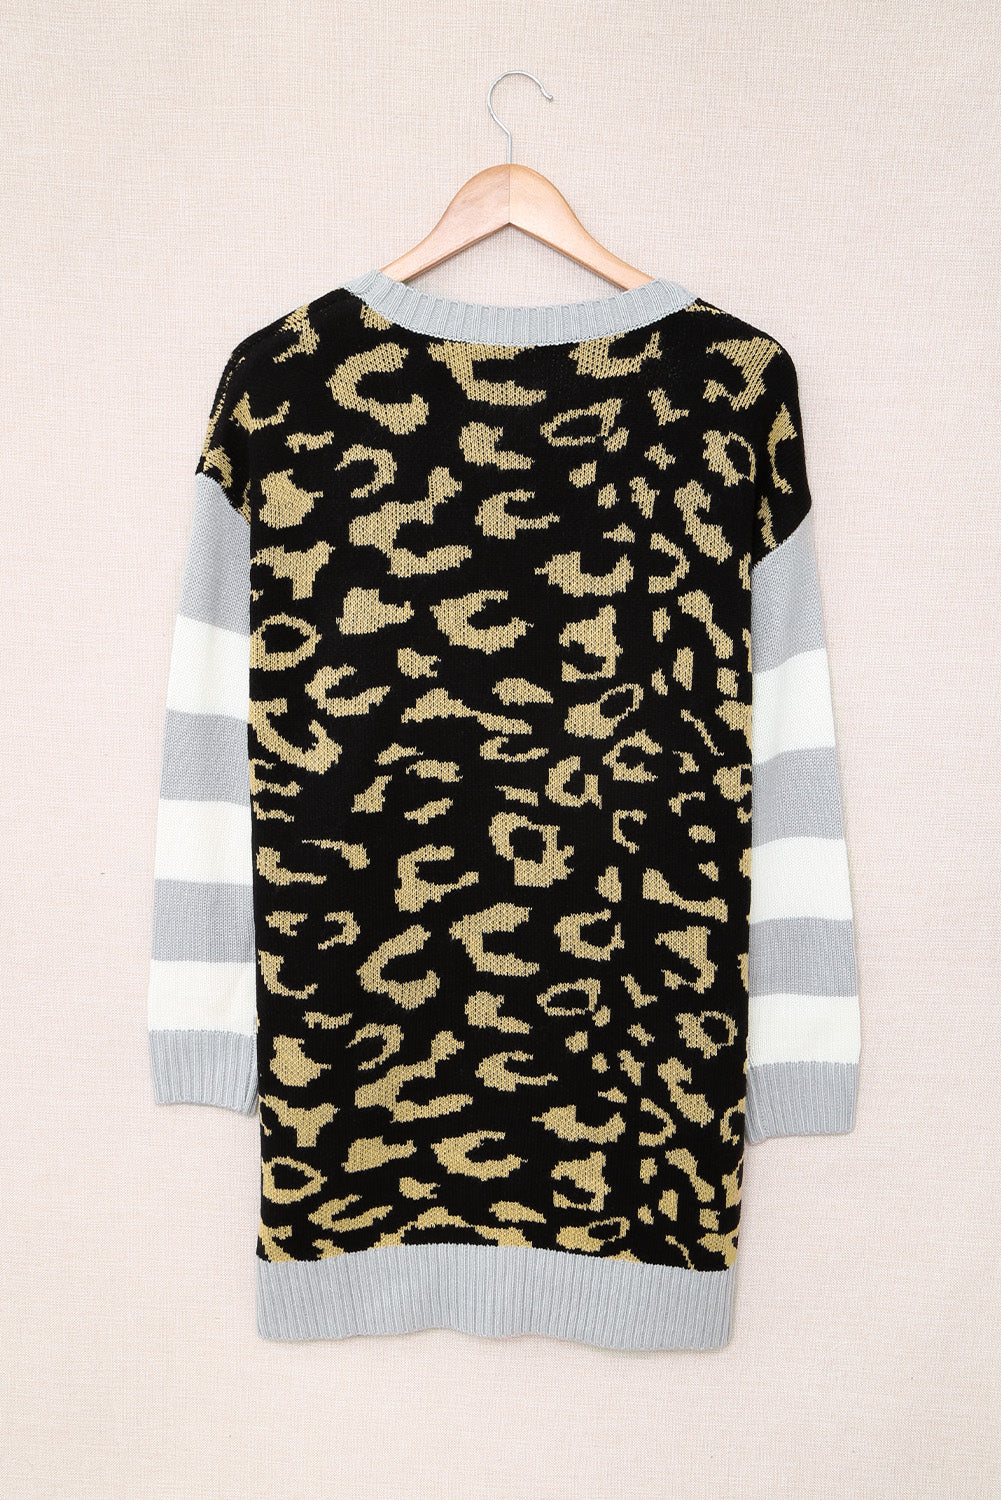 Leopard Print Striped Sleeve Open Front Longline Cardigan